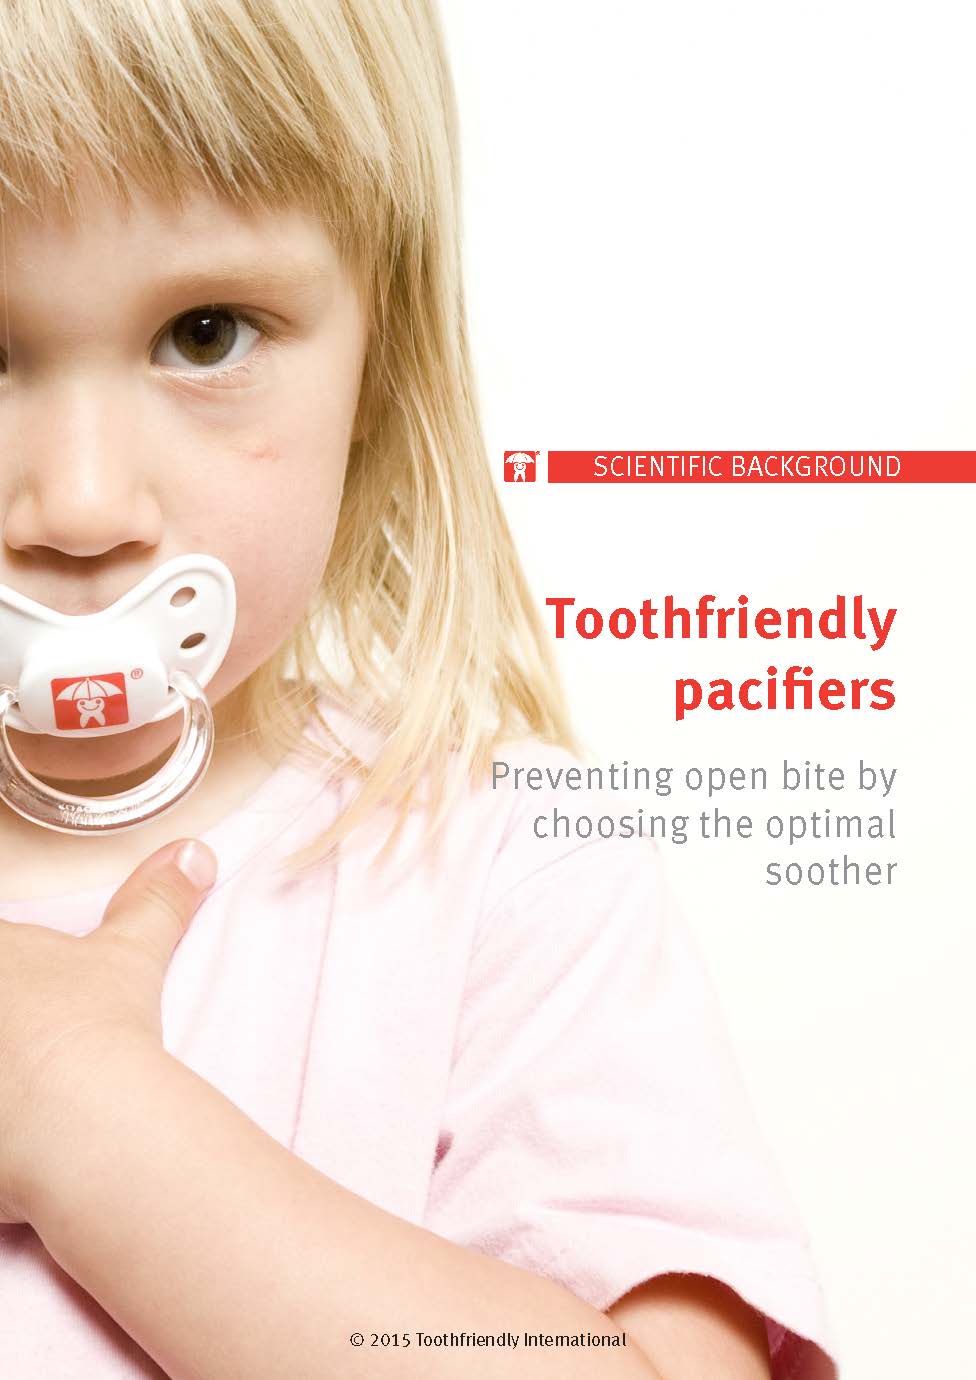 Toothfriendlypacifiers webpicture